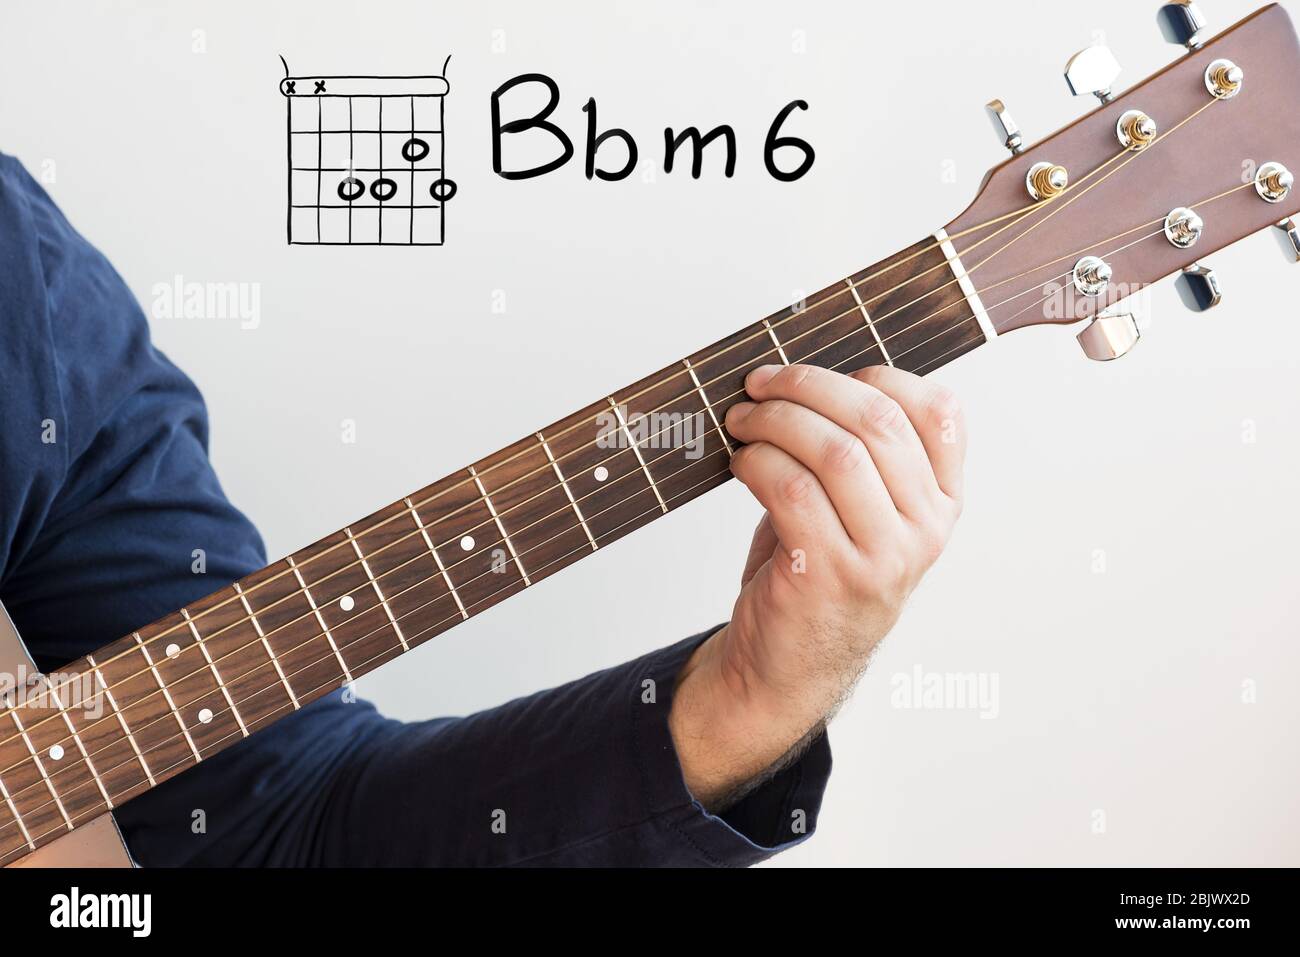 Gitarre lernen - Mann in einem dunkelblauen Hemd, der Gitarrenakkorde auf  Whiteboard spielt, Chord B-Moll 6 Stockfotografie - Alamy